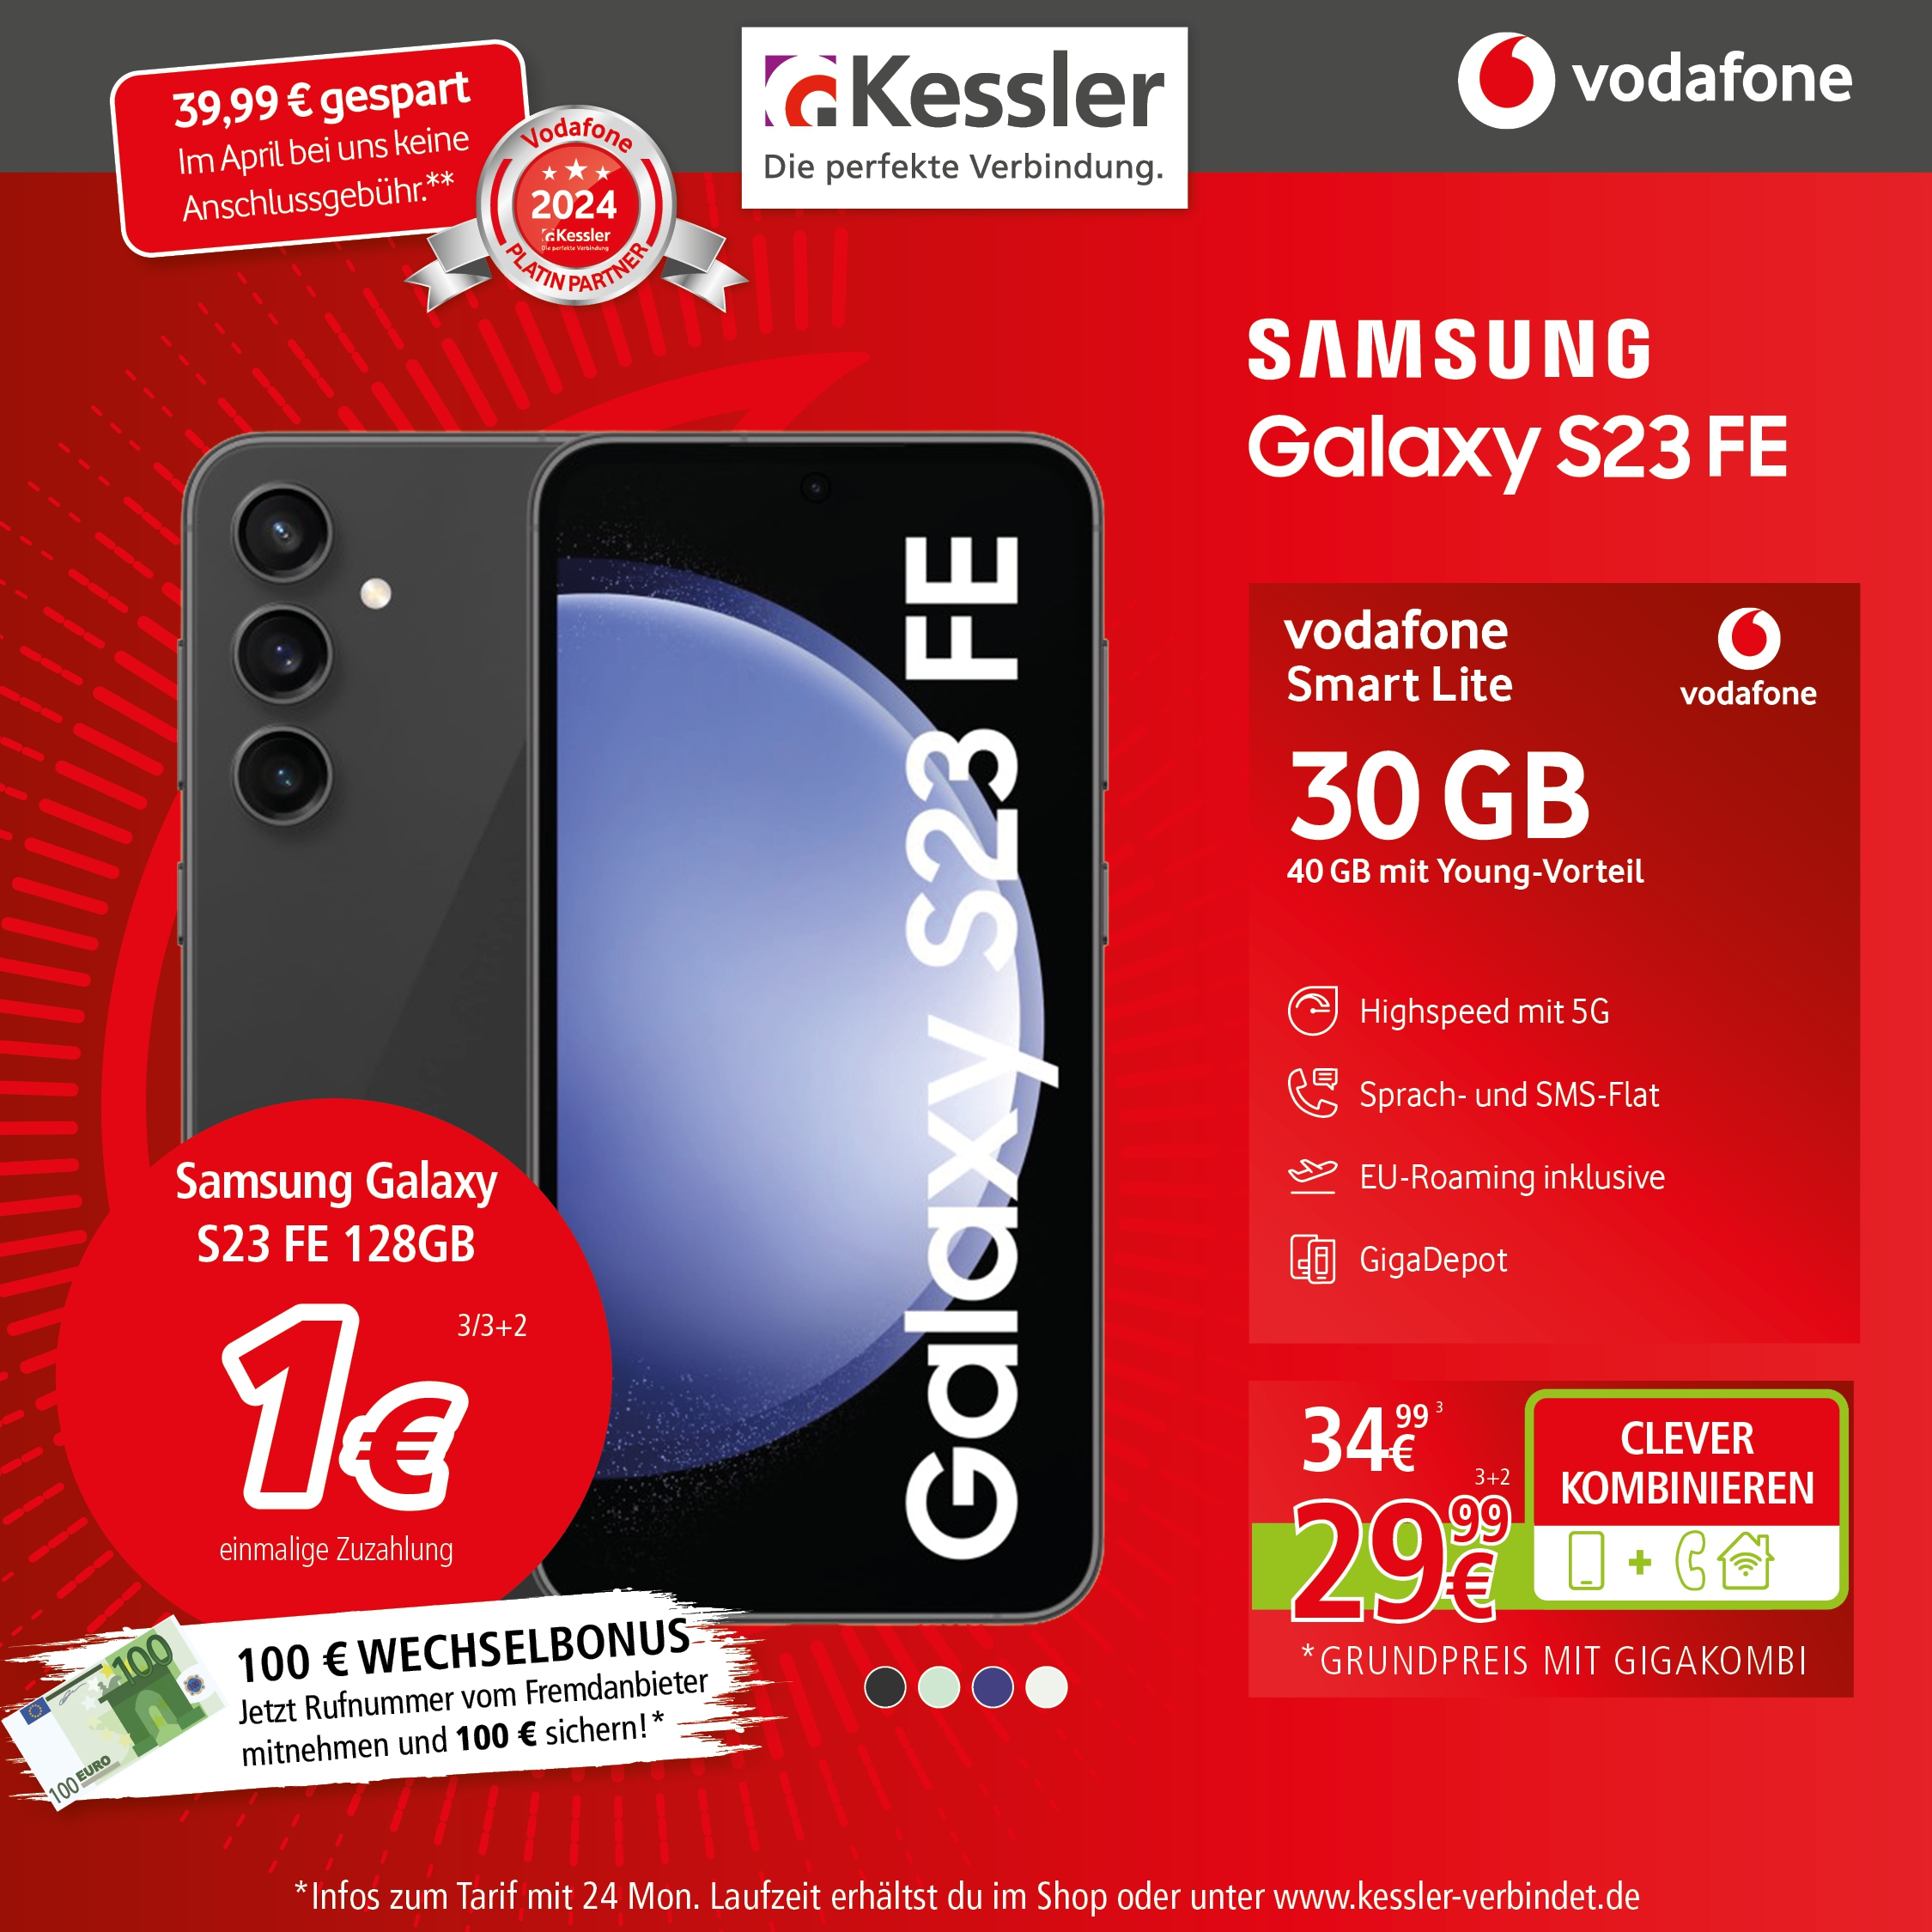 Vodafone Smart Lite mit Galaxy S23FE